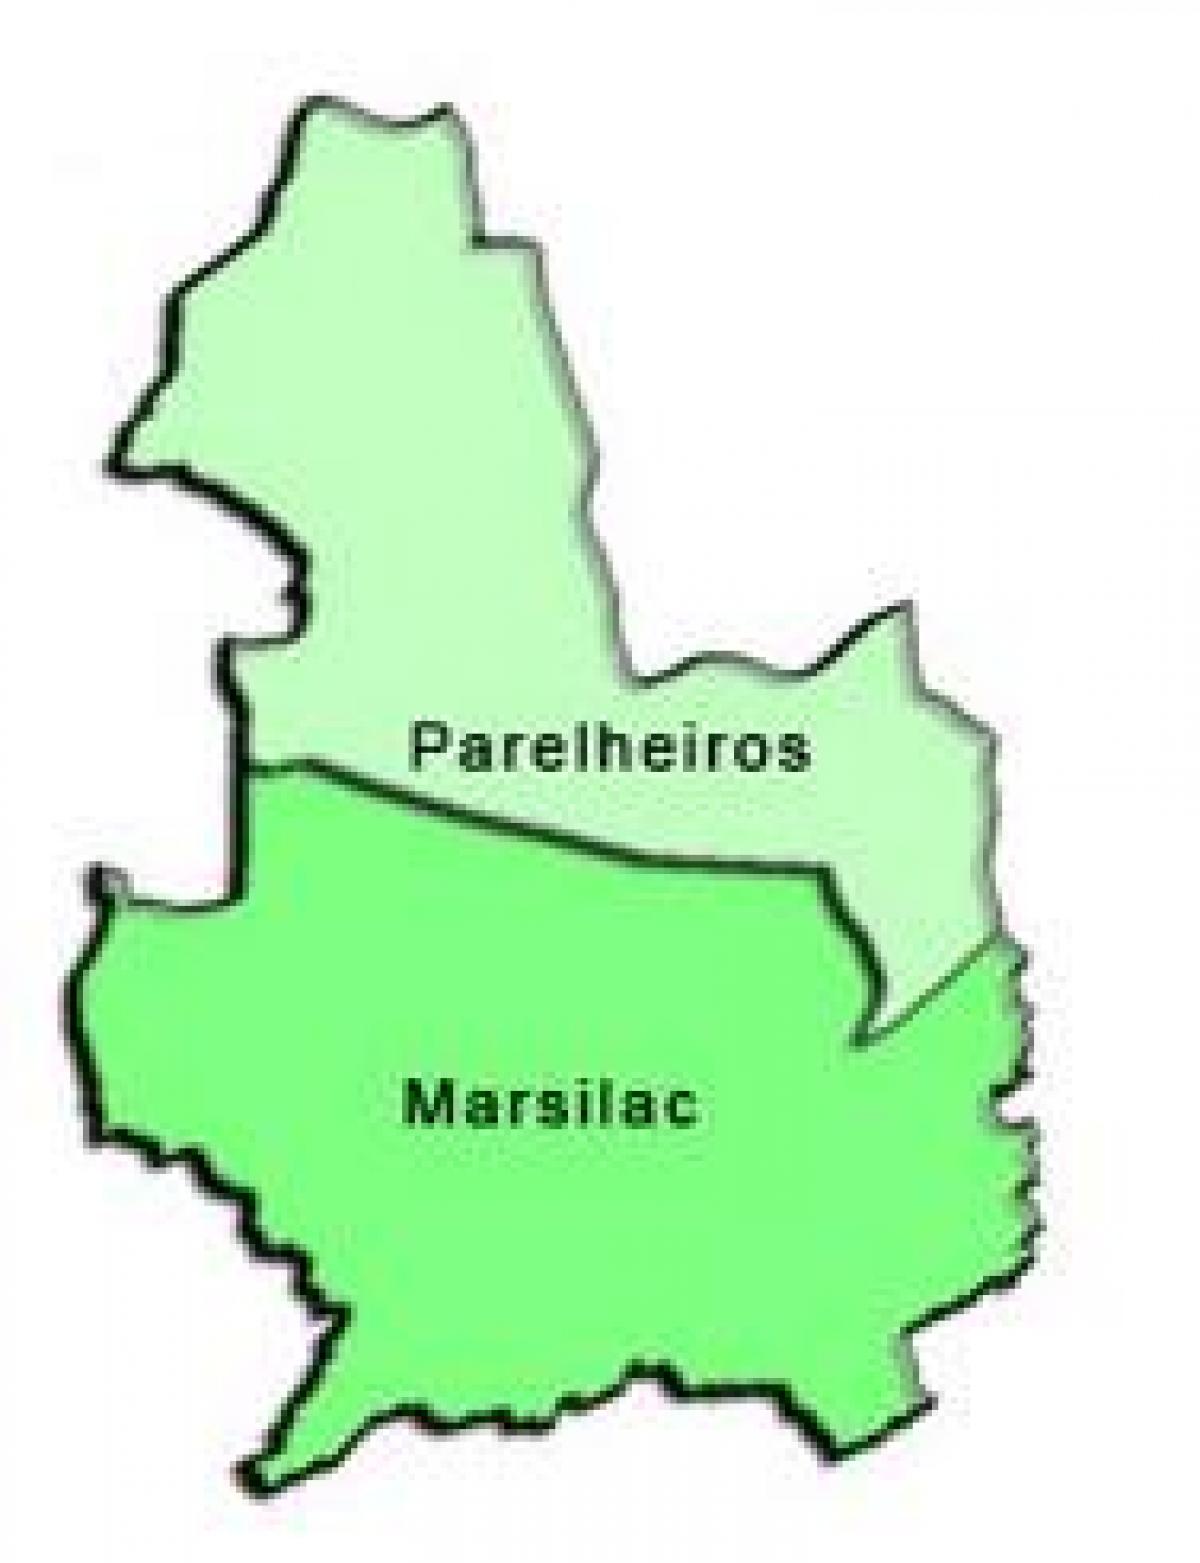 Kort over Parelheiros sub-præfekturet